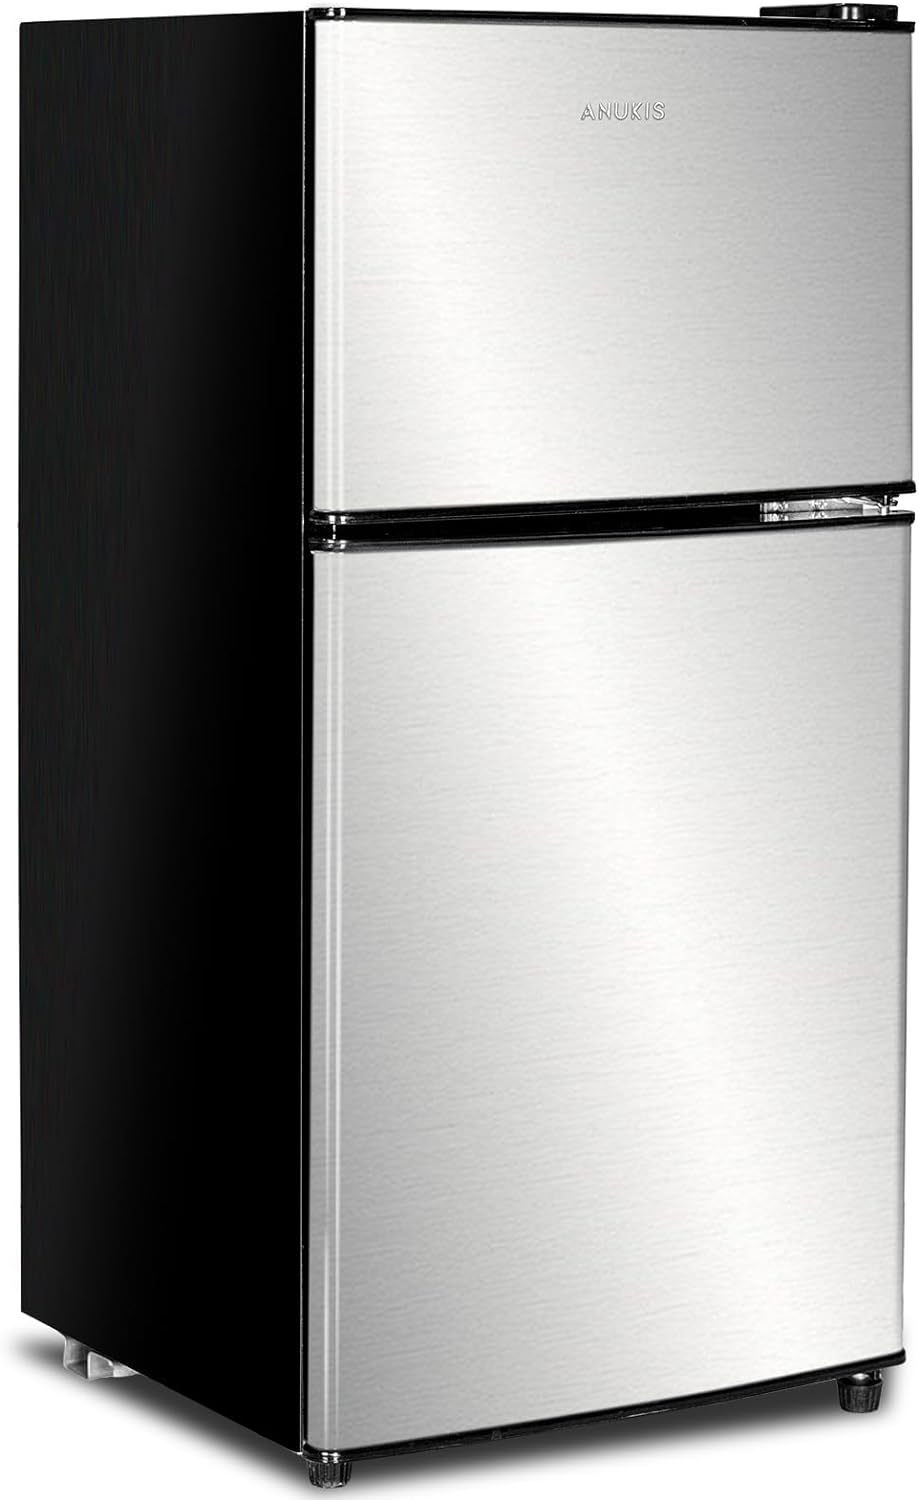 An oblique view of a refrigerator